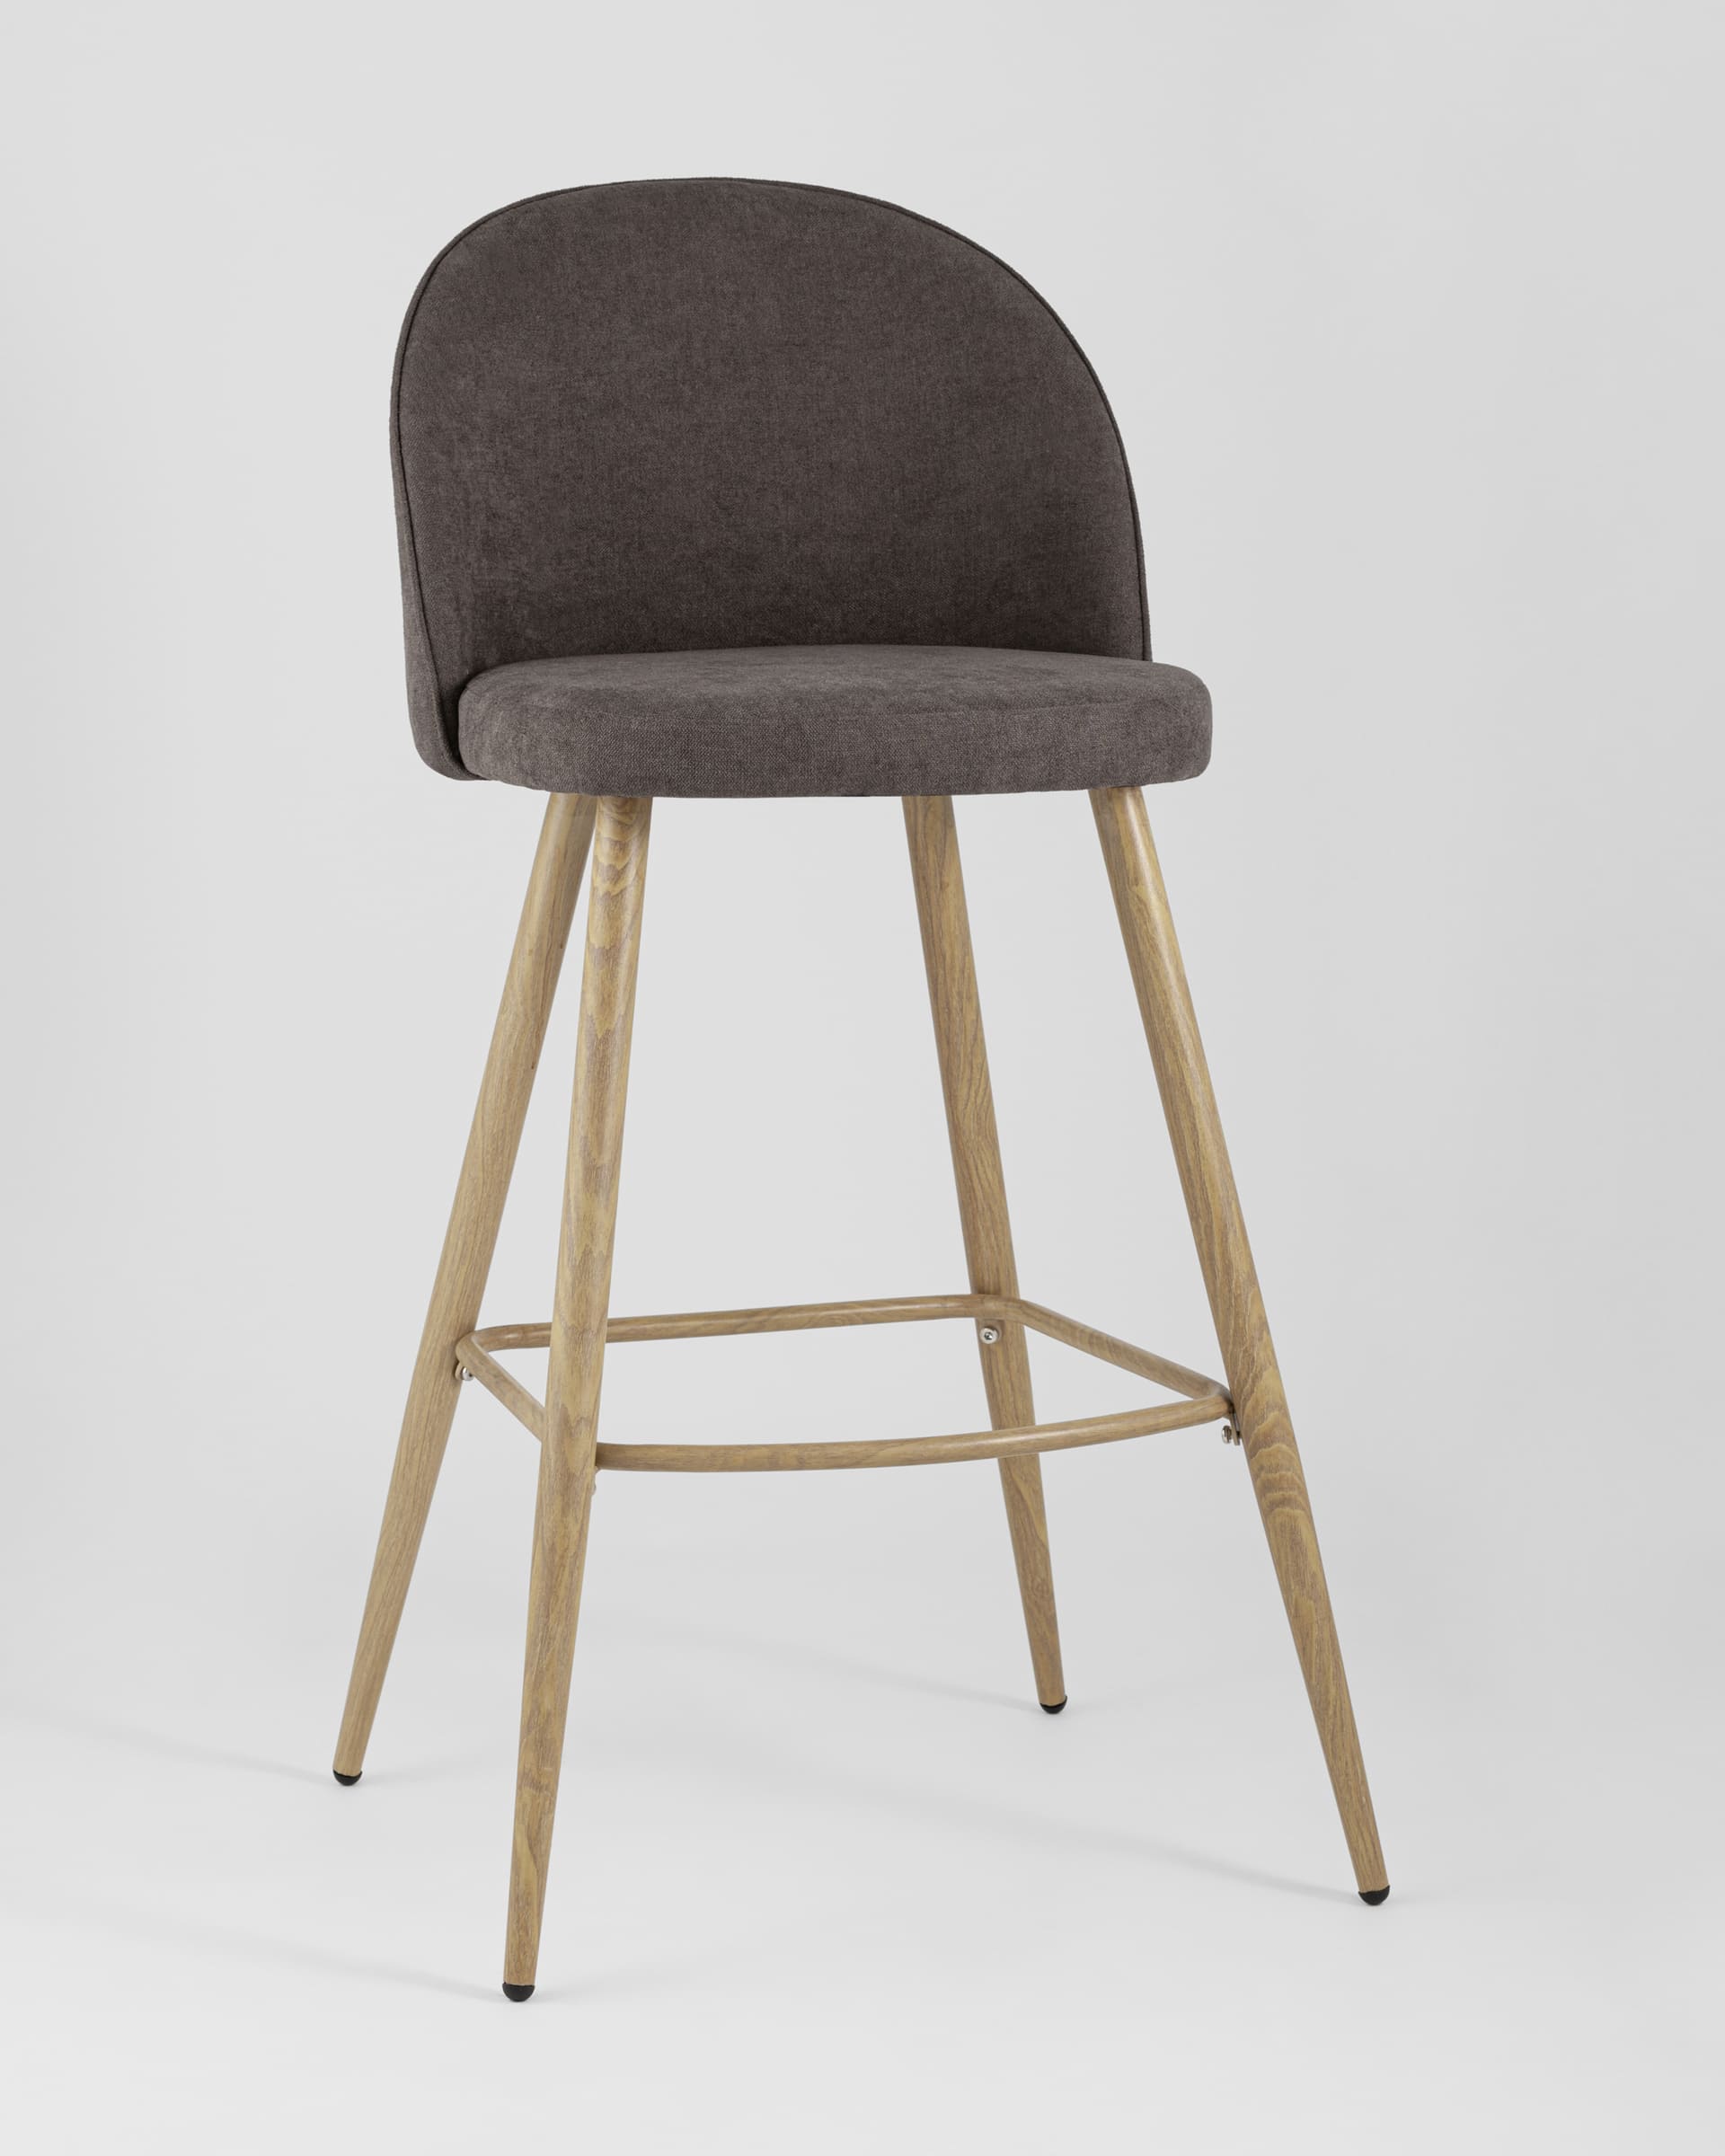 Барный стул Лион обивка шенилл коричневая, ножки металлические в цвет светлого дерева